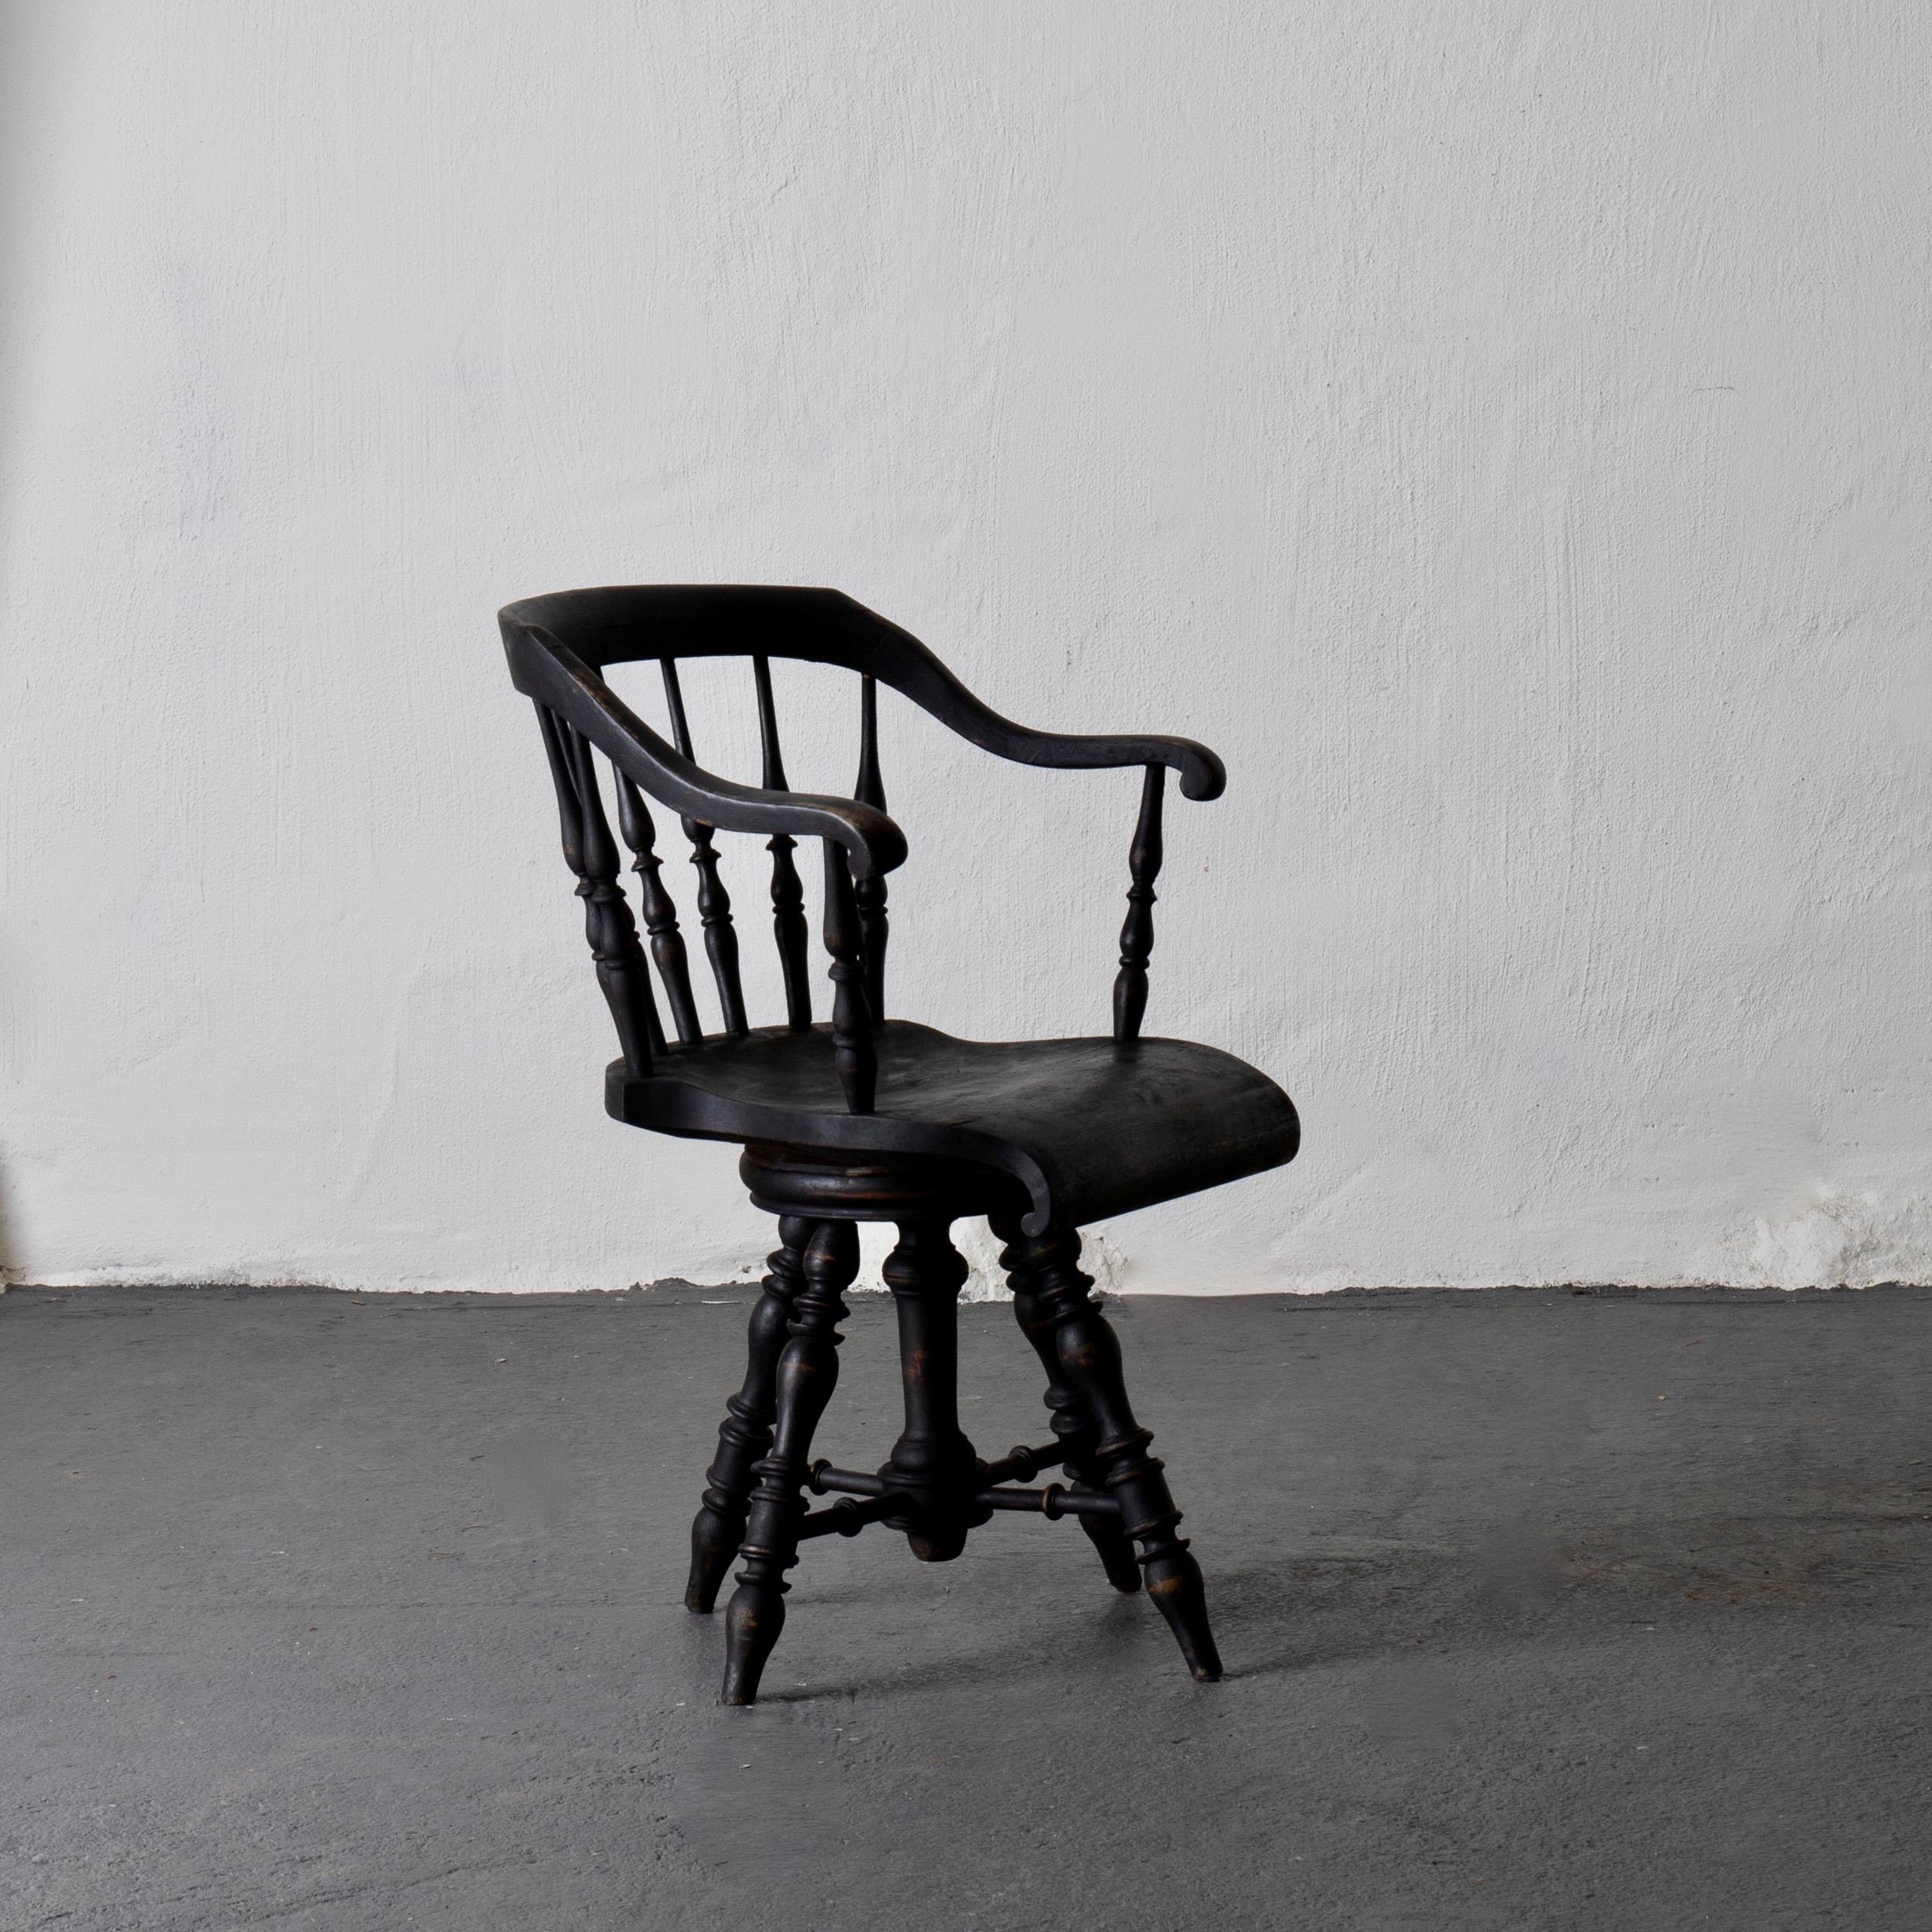 Sessel Kapitänsstuhl schwarz schwedisch 19. Jahrhundert Schweden. Ein Sessel aus dem Ende des 19. Jahrhunderts. Lackiert in unserem charakteristischen Laserow Black.